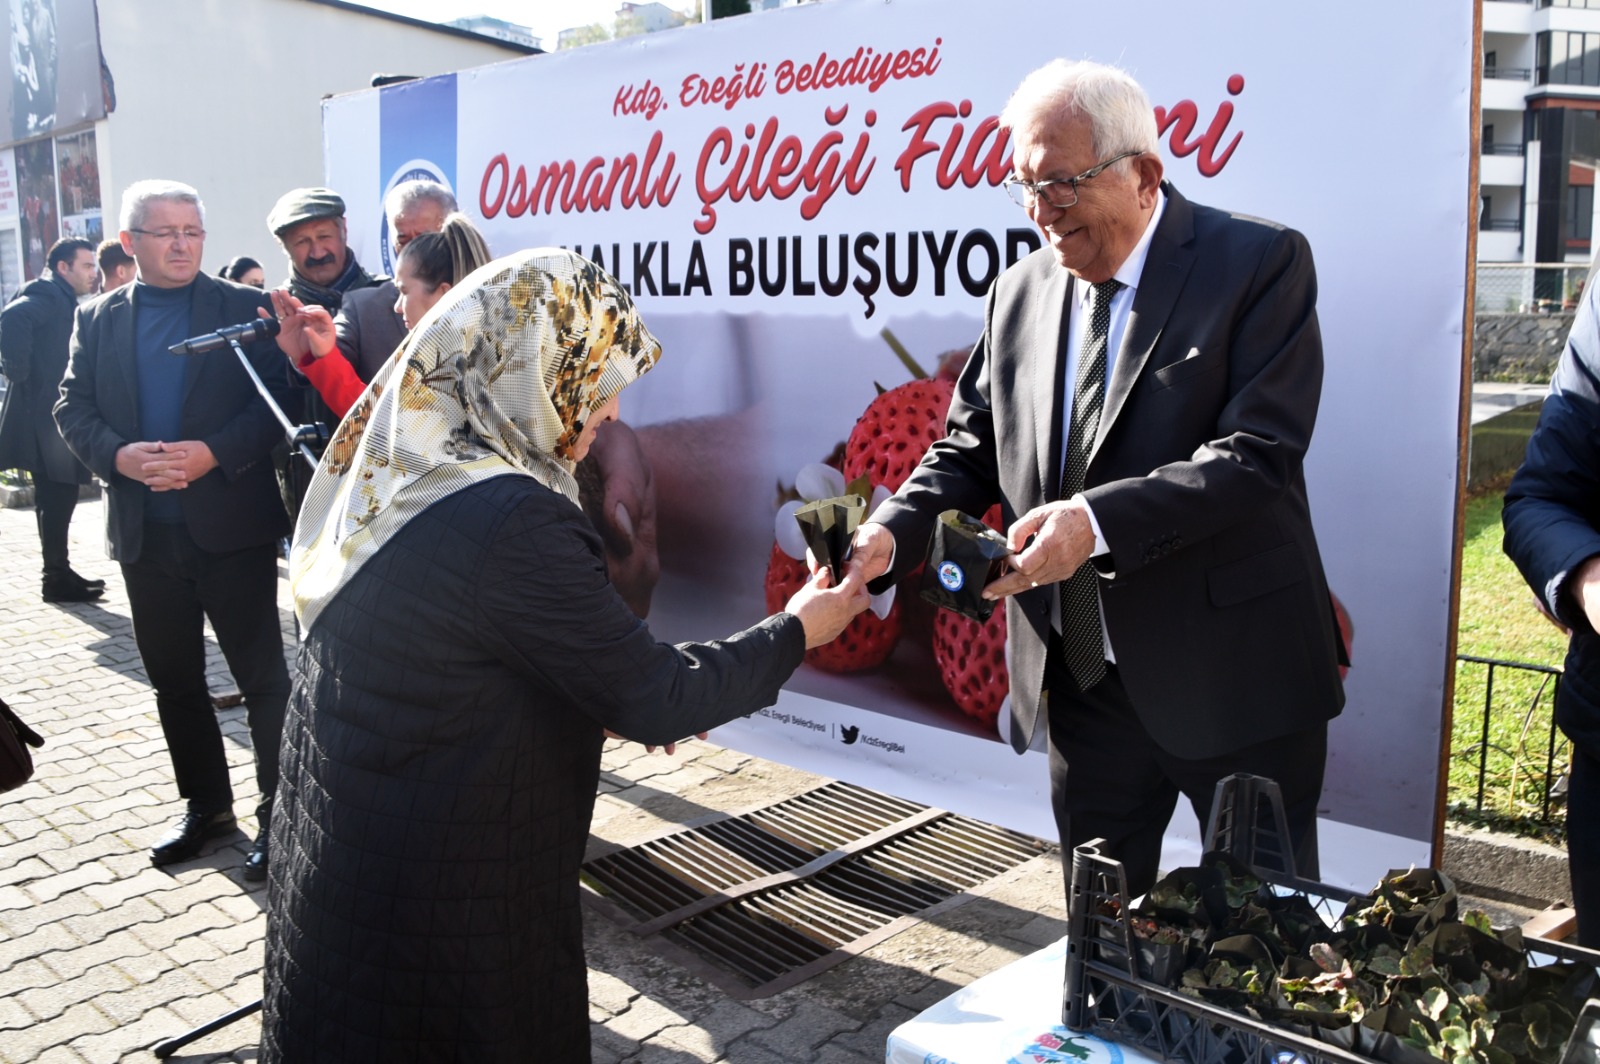 Zonguldak’ta 3 bin Osmanlı çileği fidesi dağıtıldı